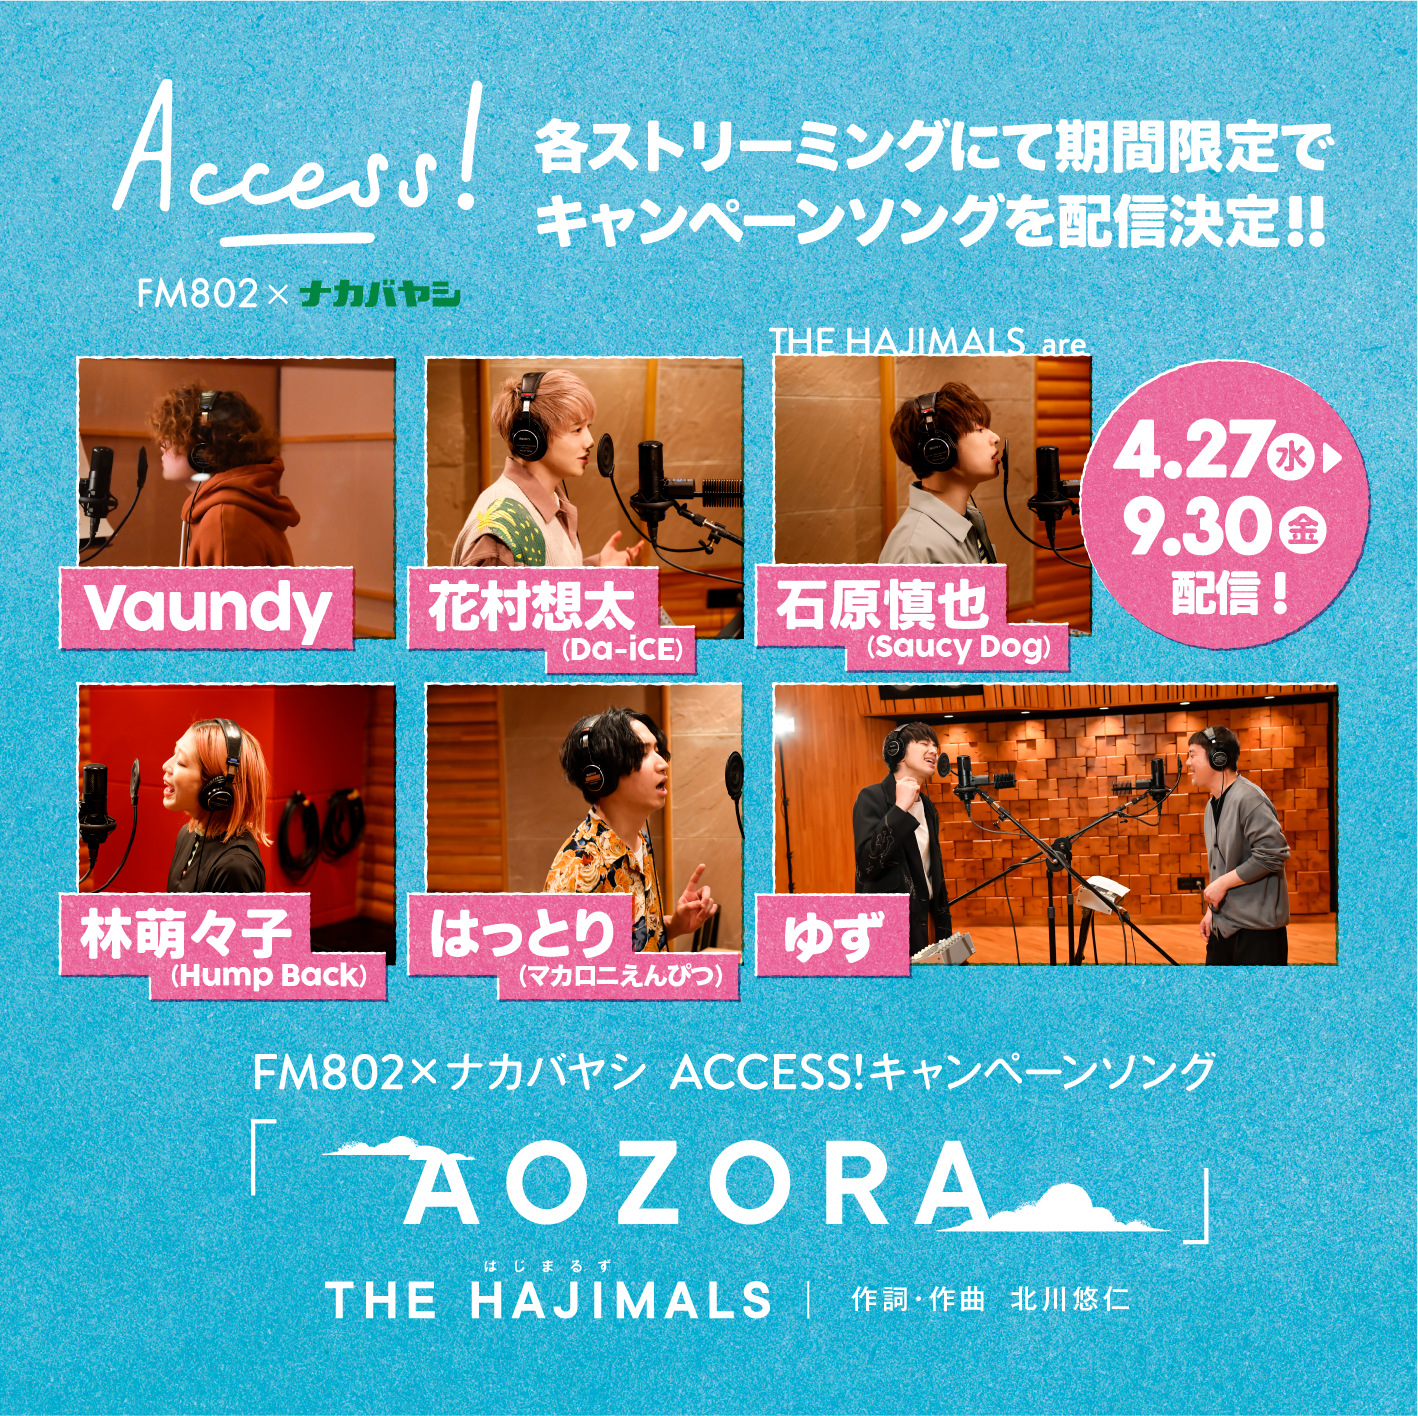 FM802×ナカバヤシ ACCESS!キャンペーンソング 『AOZORA』の期間限定 